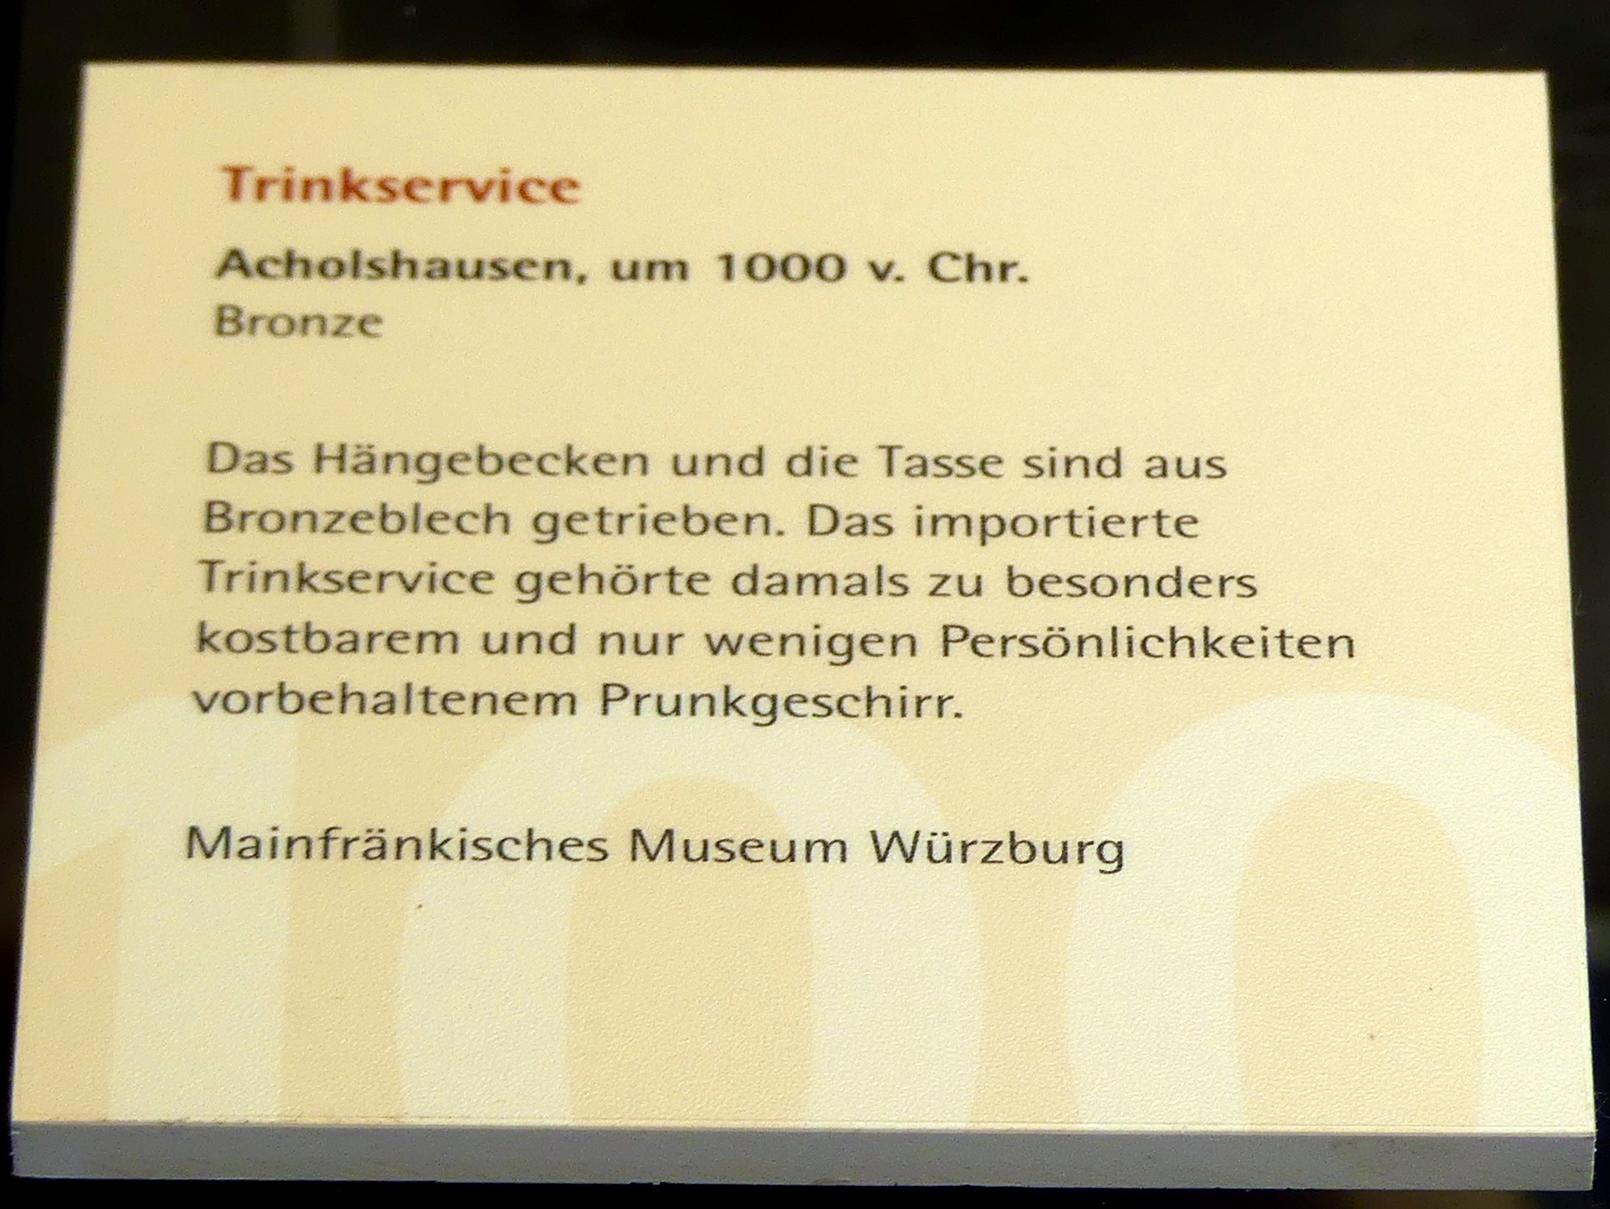 Hängebecken, Urnenfelderzeit, 1400 - 700 v. Chr., 1000 v. Chr., Bild 2/2